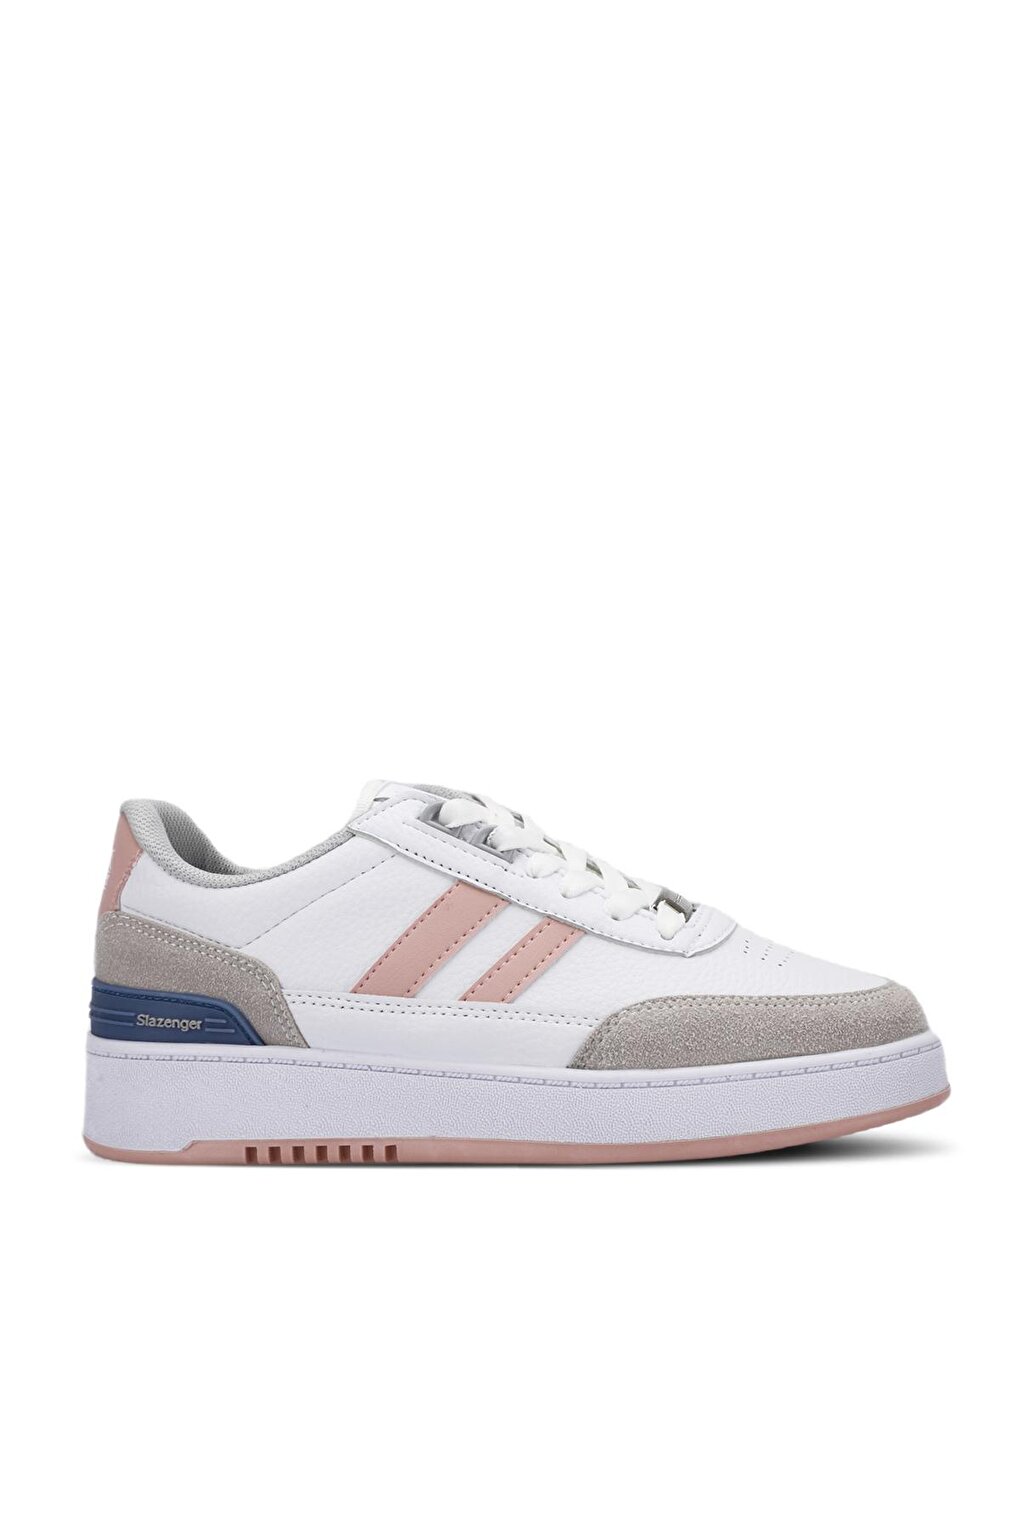 DAPHNE Sneaker Женская обувь Белый/Розовый SLAZENGER asus mw202 бело розовый